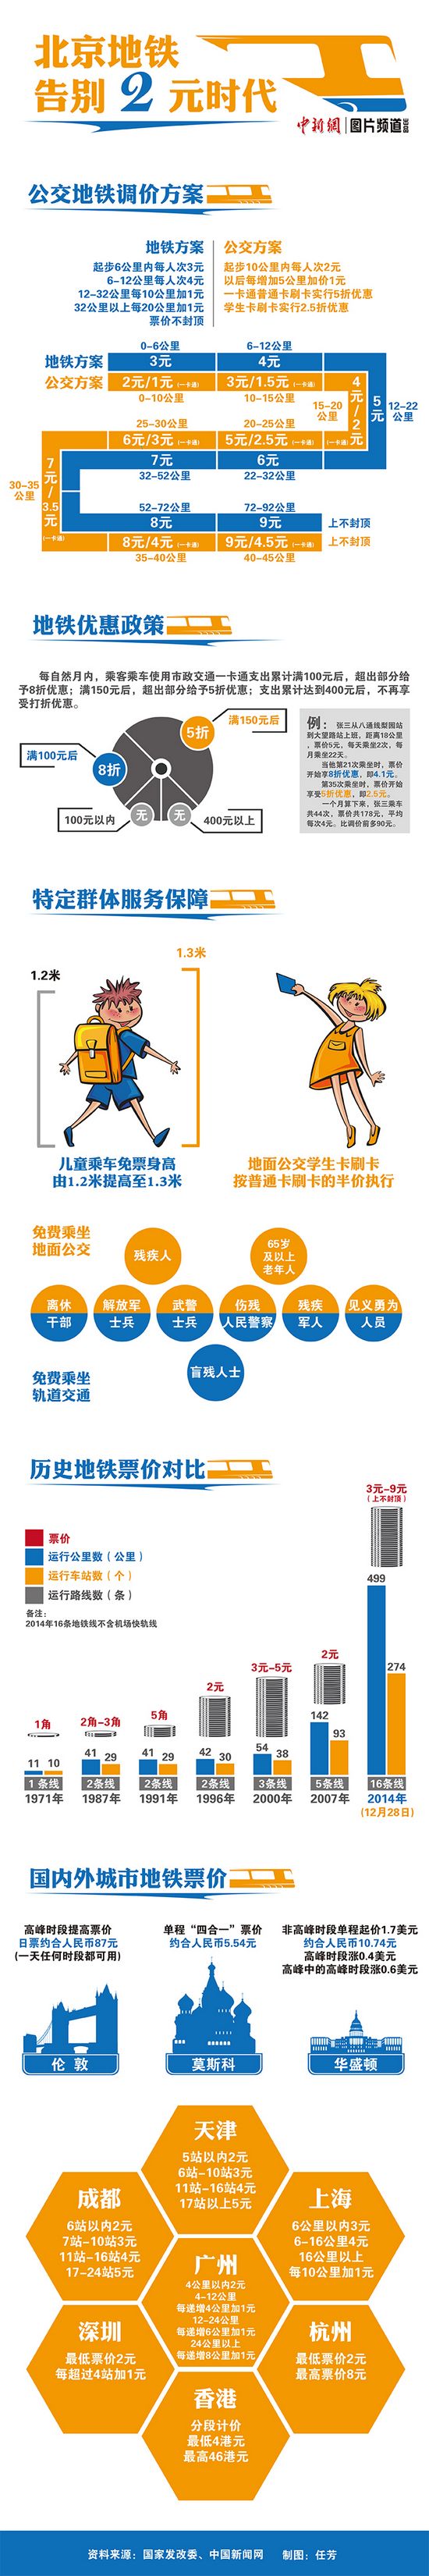 北京公交地铁今日起实行新票价 车票设4小时时限